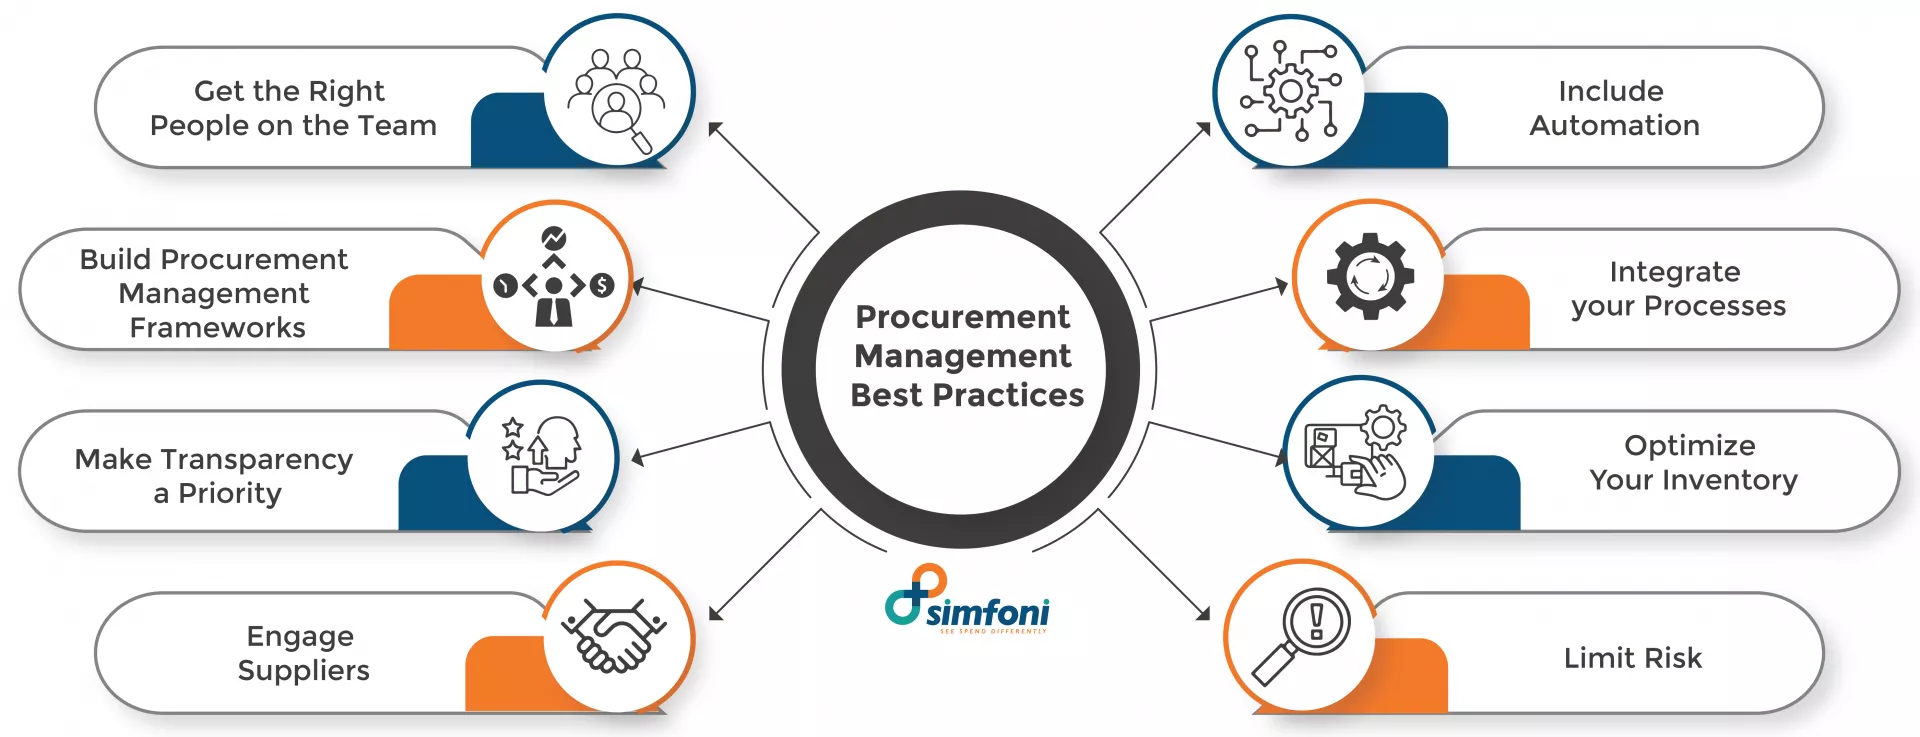 Procurement Management Best Practices